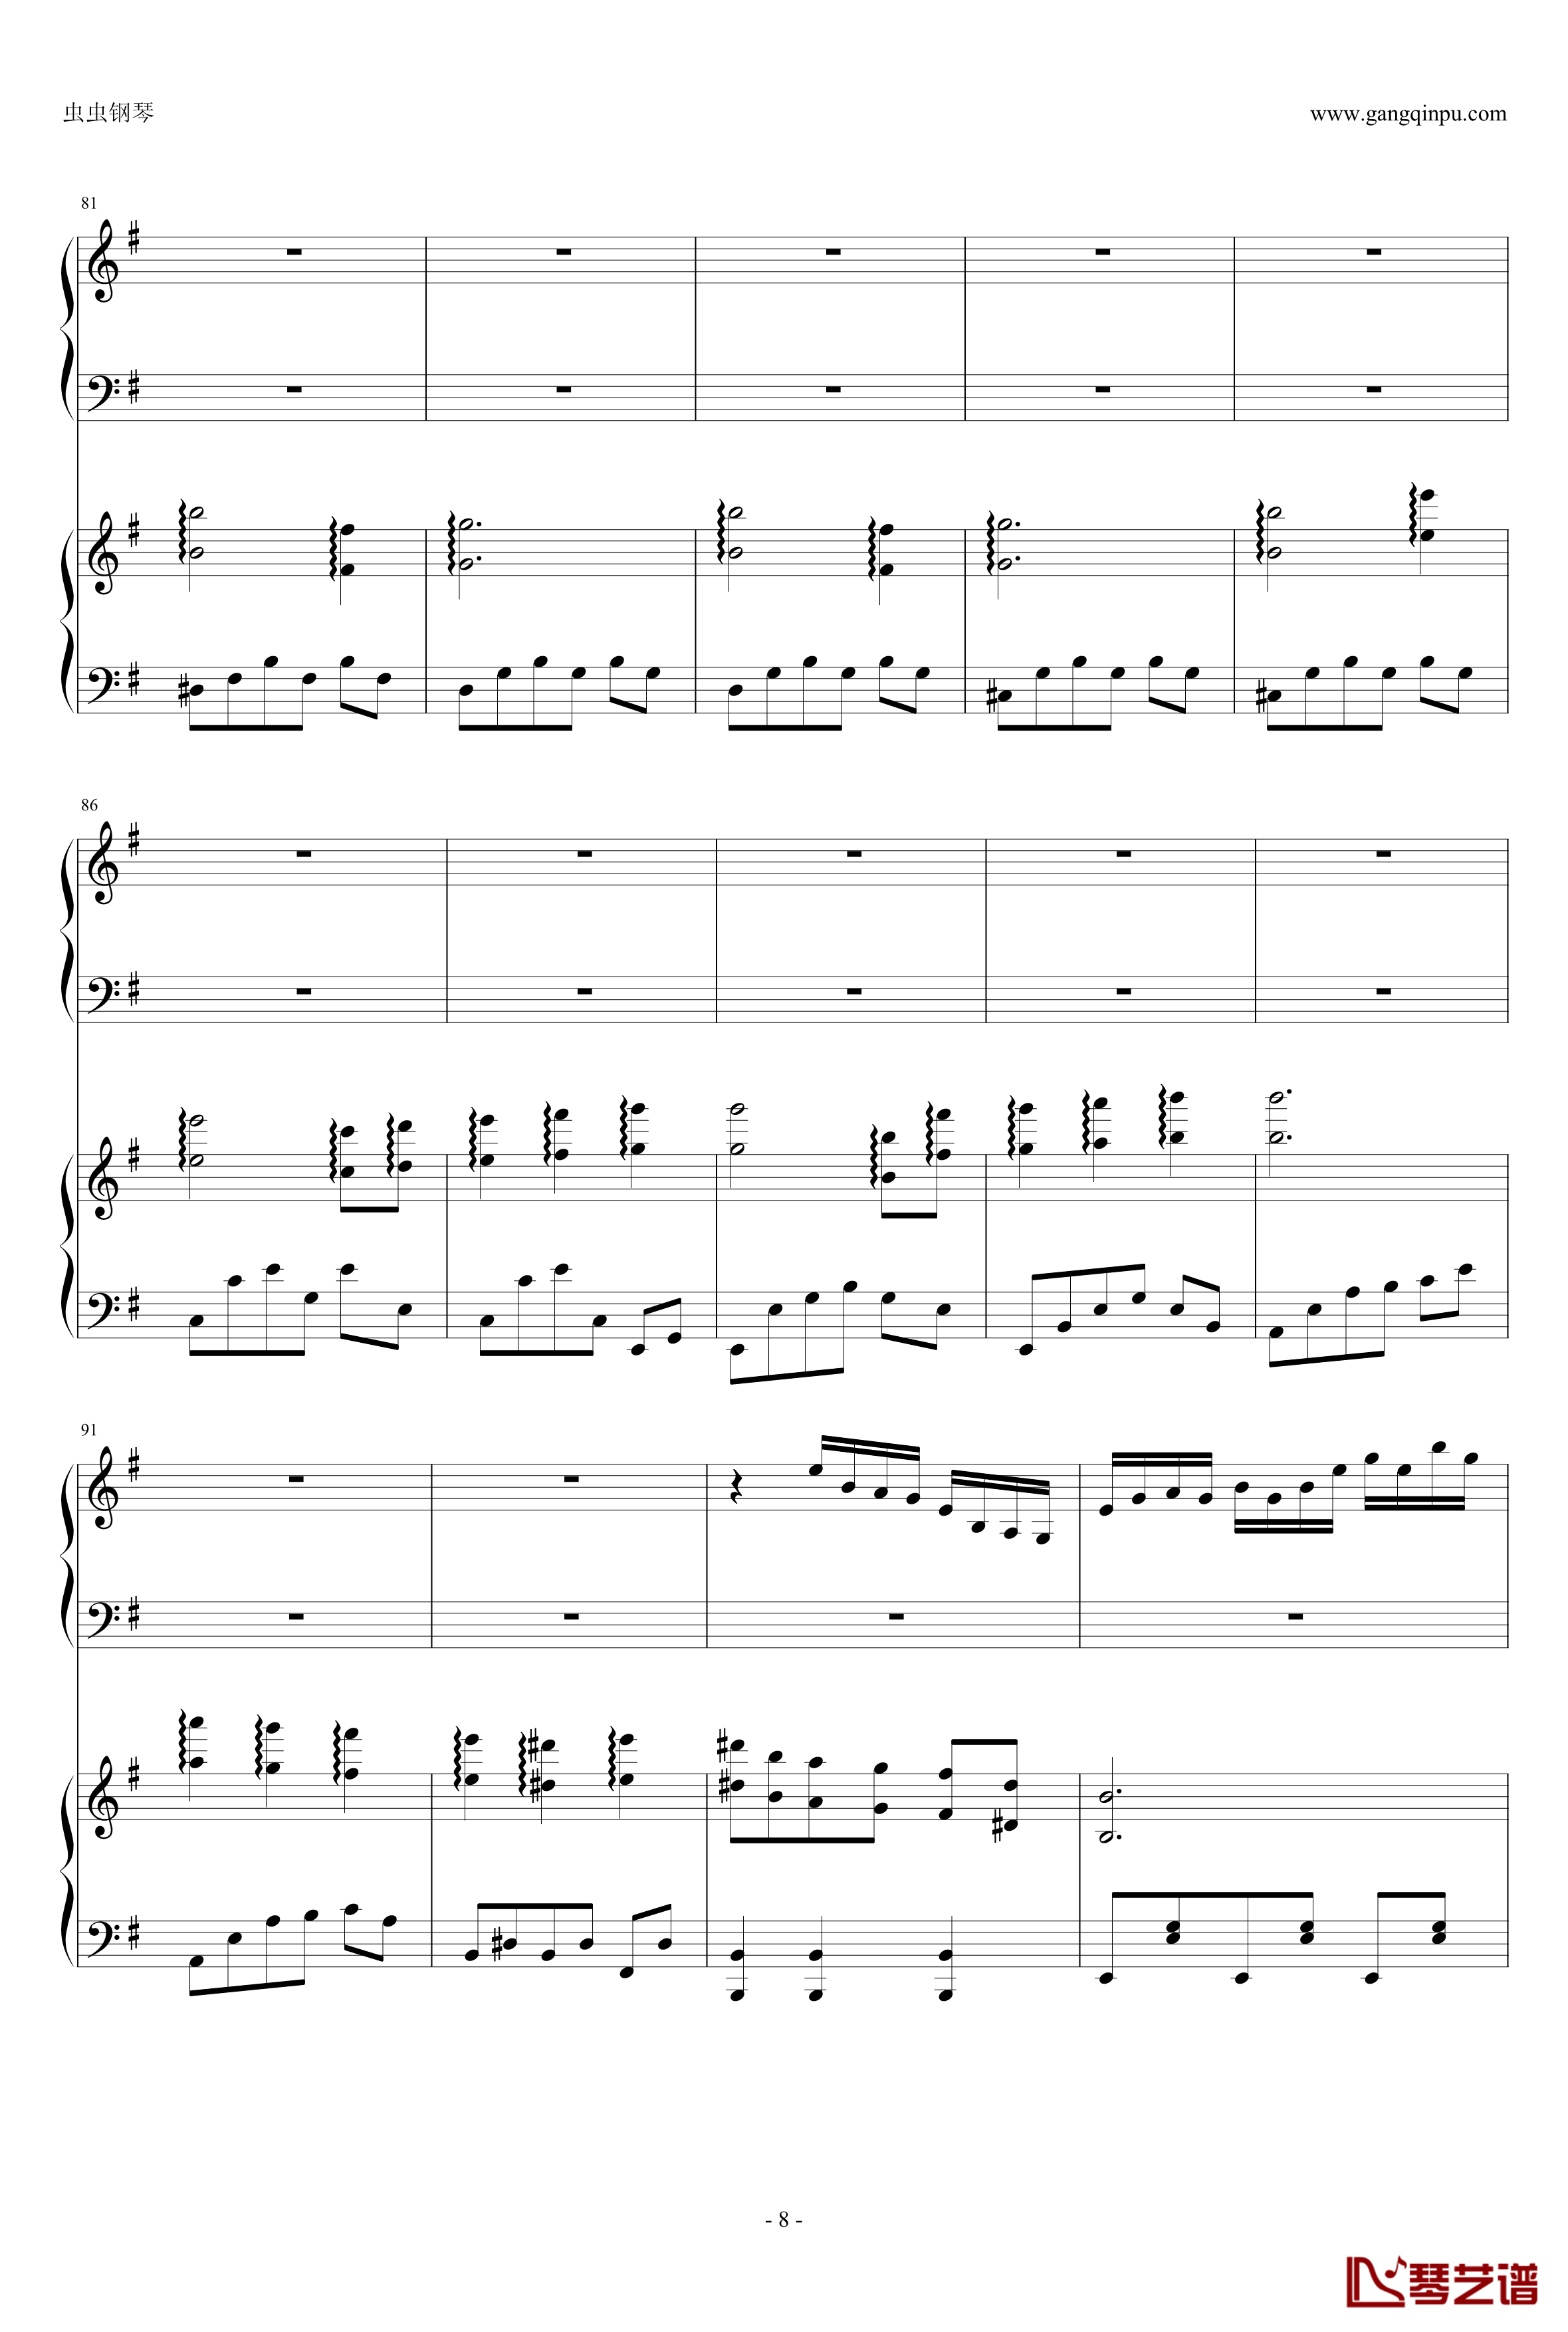 東方連奏曲II Pianoforte钢琴谱-第一部分-东方project8